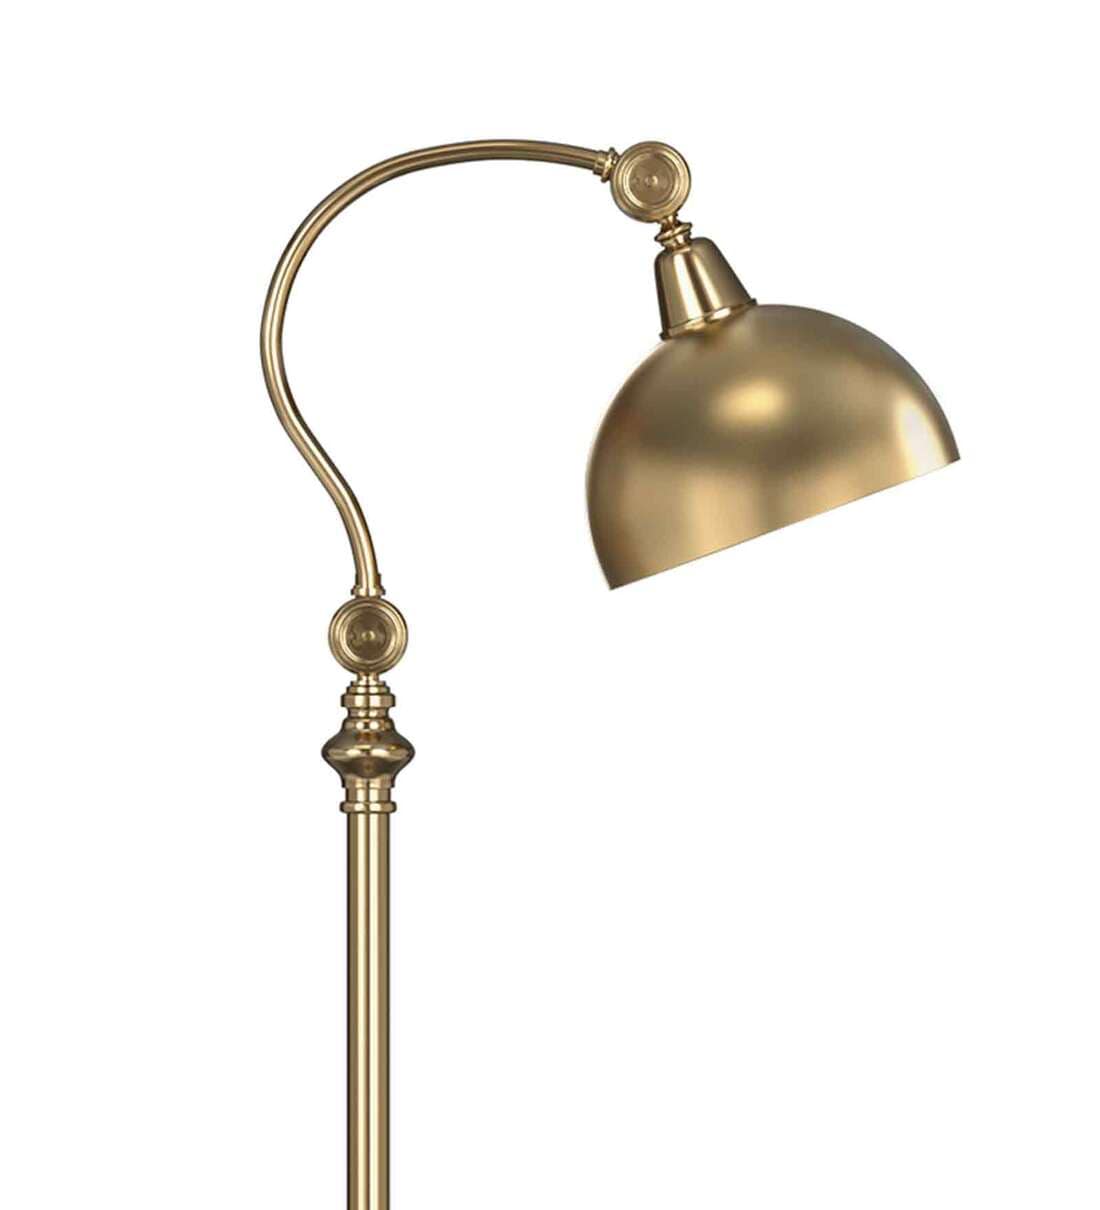 Antique Victorian Brass Adjustable Piano Floor Lamp – Bucks County